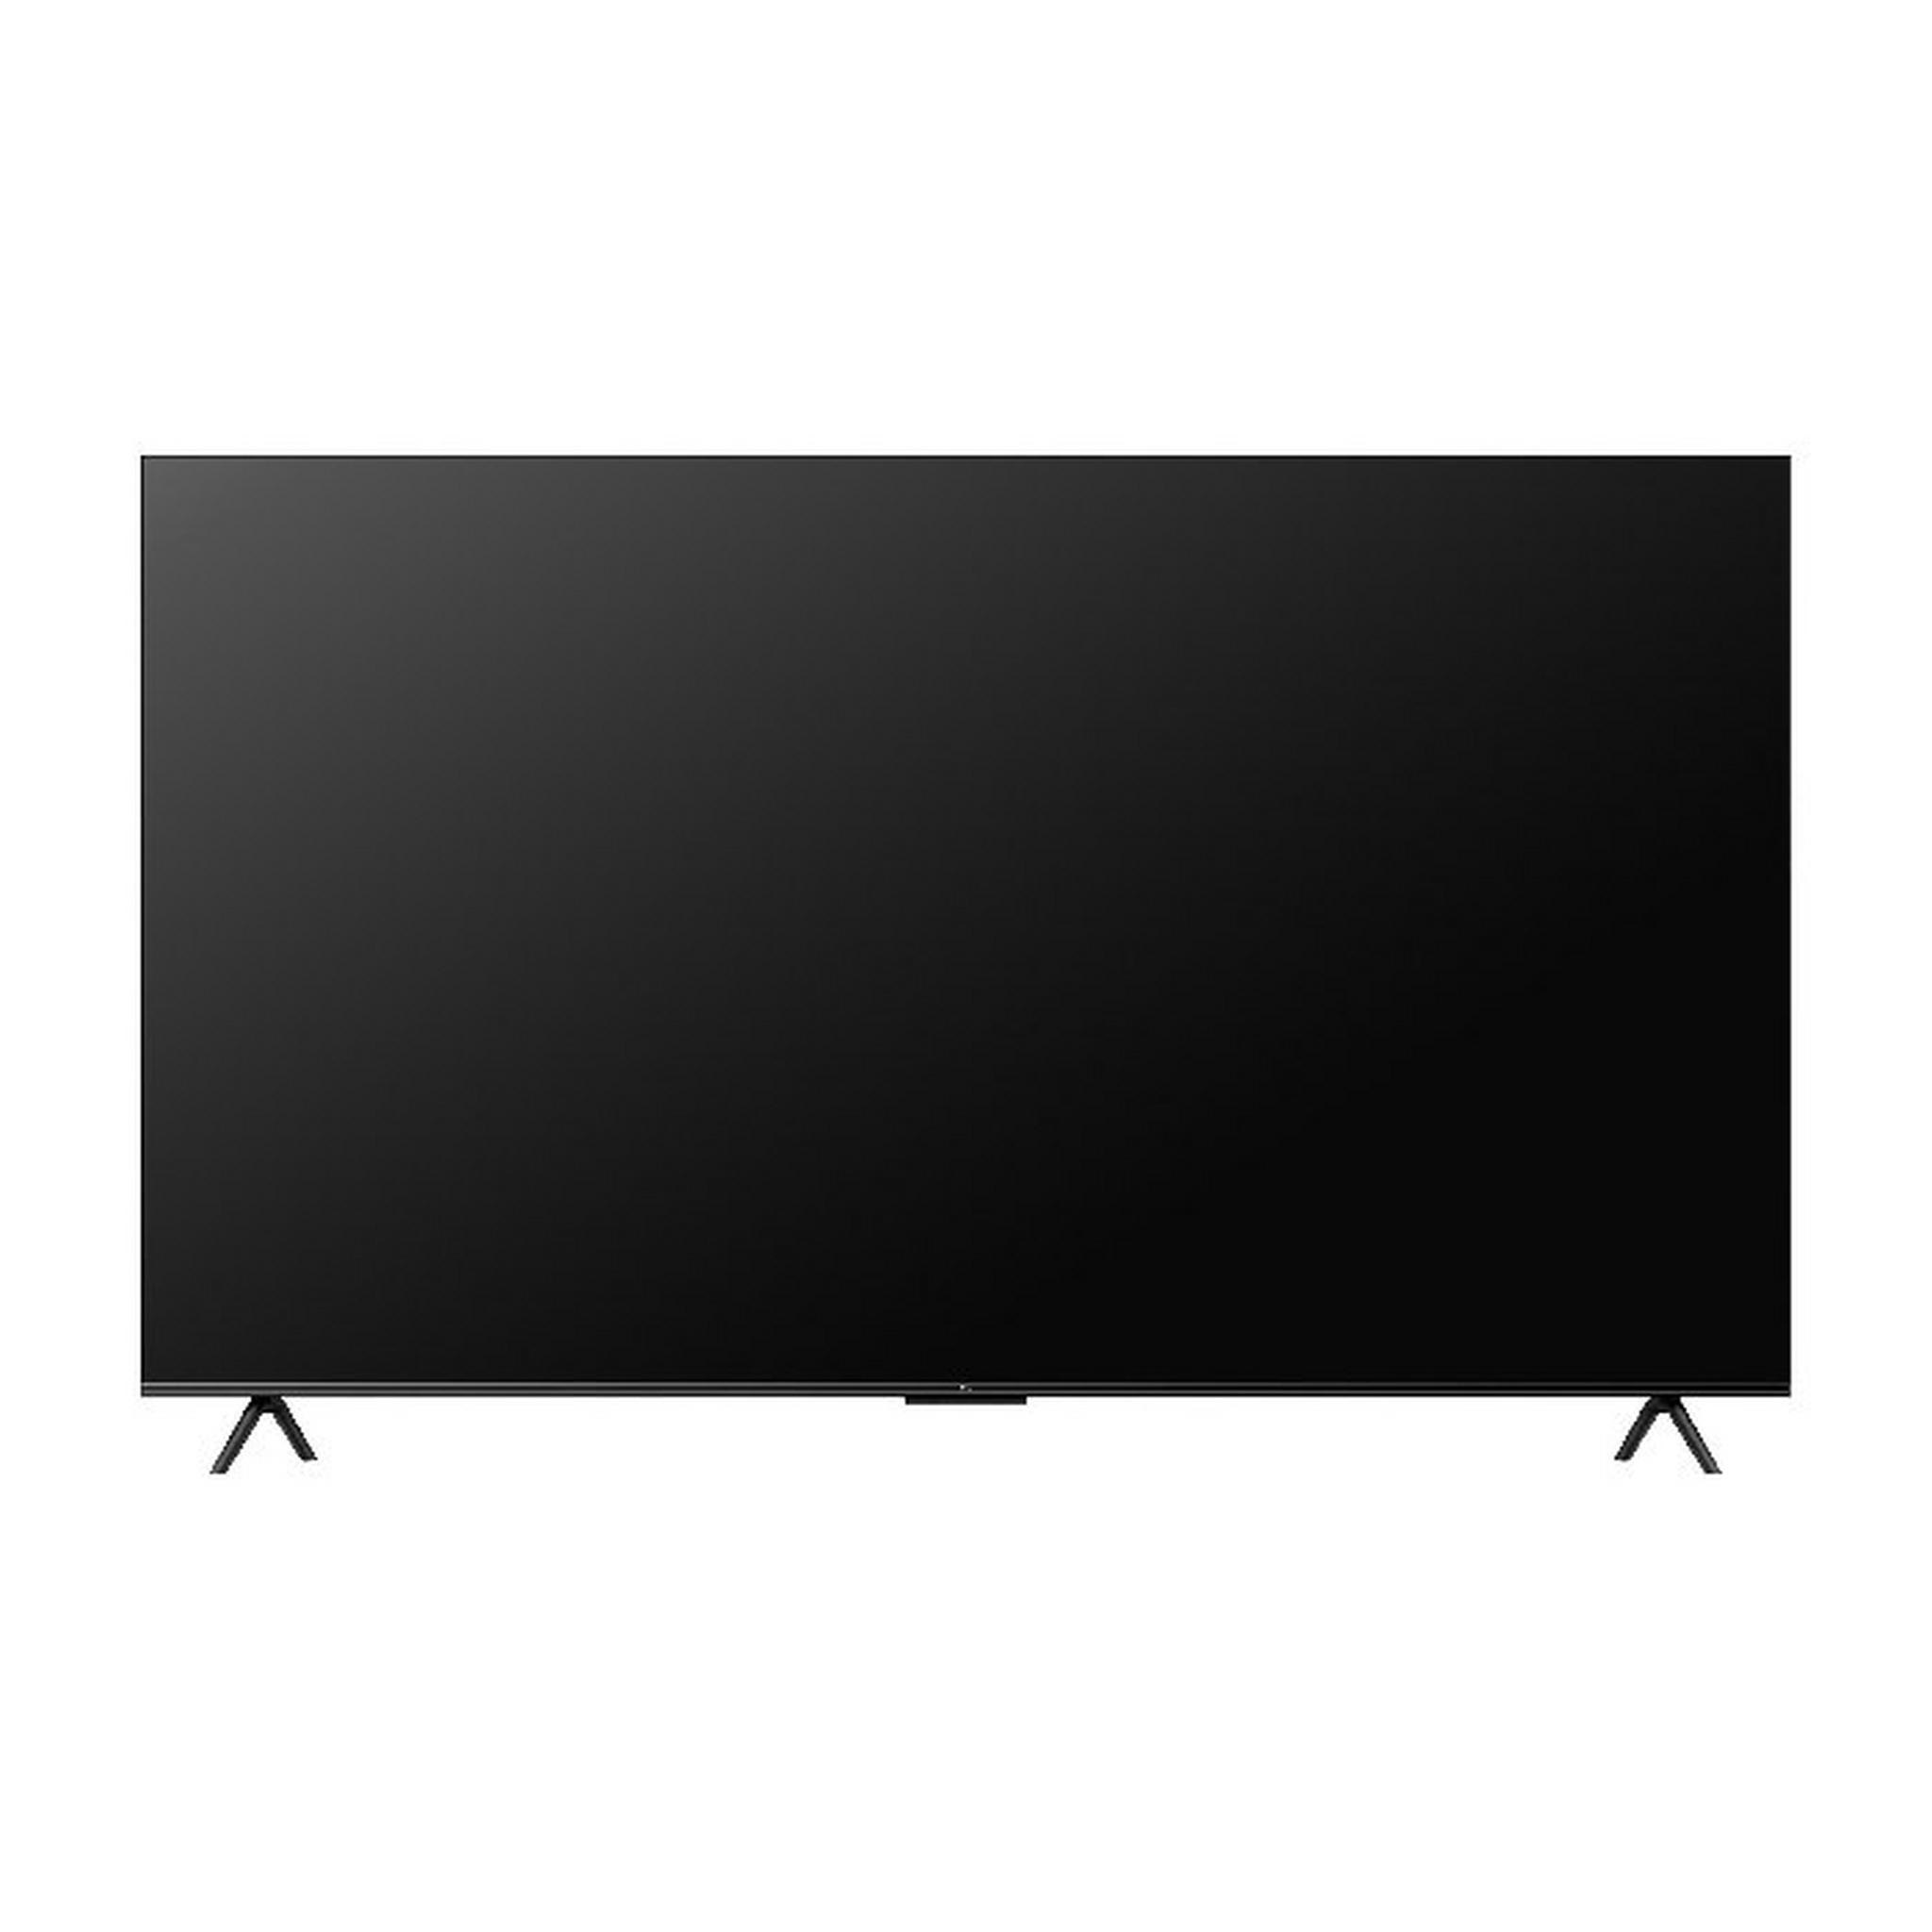 تلفزيون تي سي إل 85 بوصة فائقة الوضوح 4كي - 85P745 -أسود